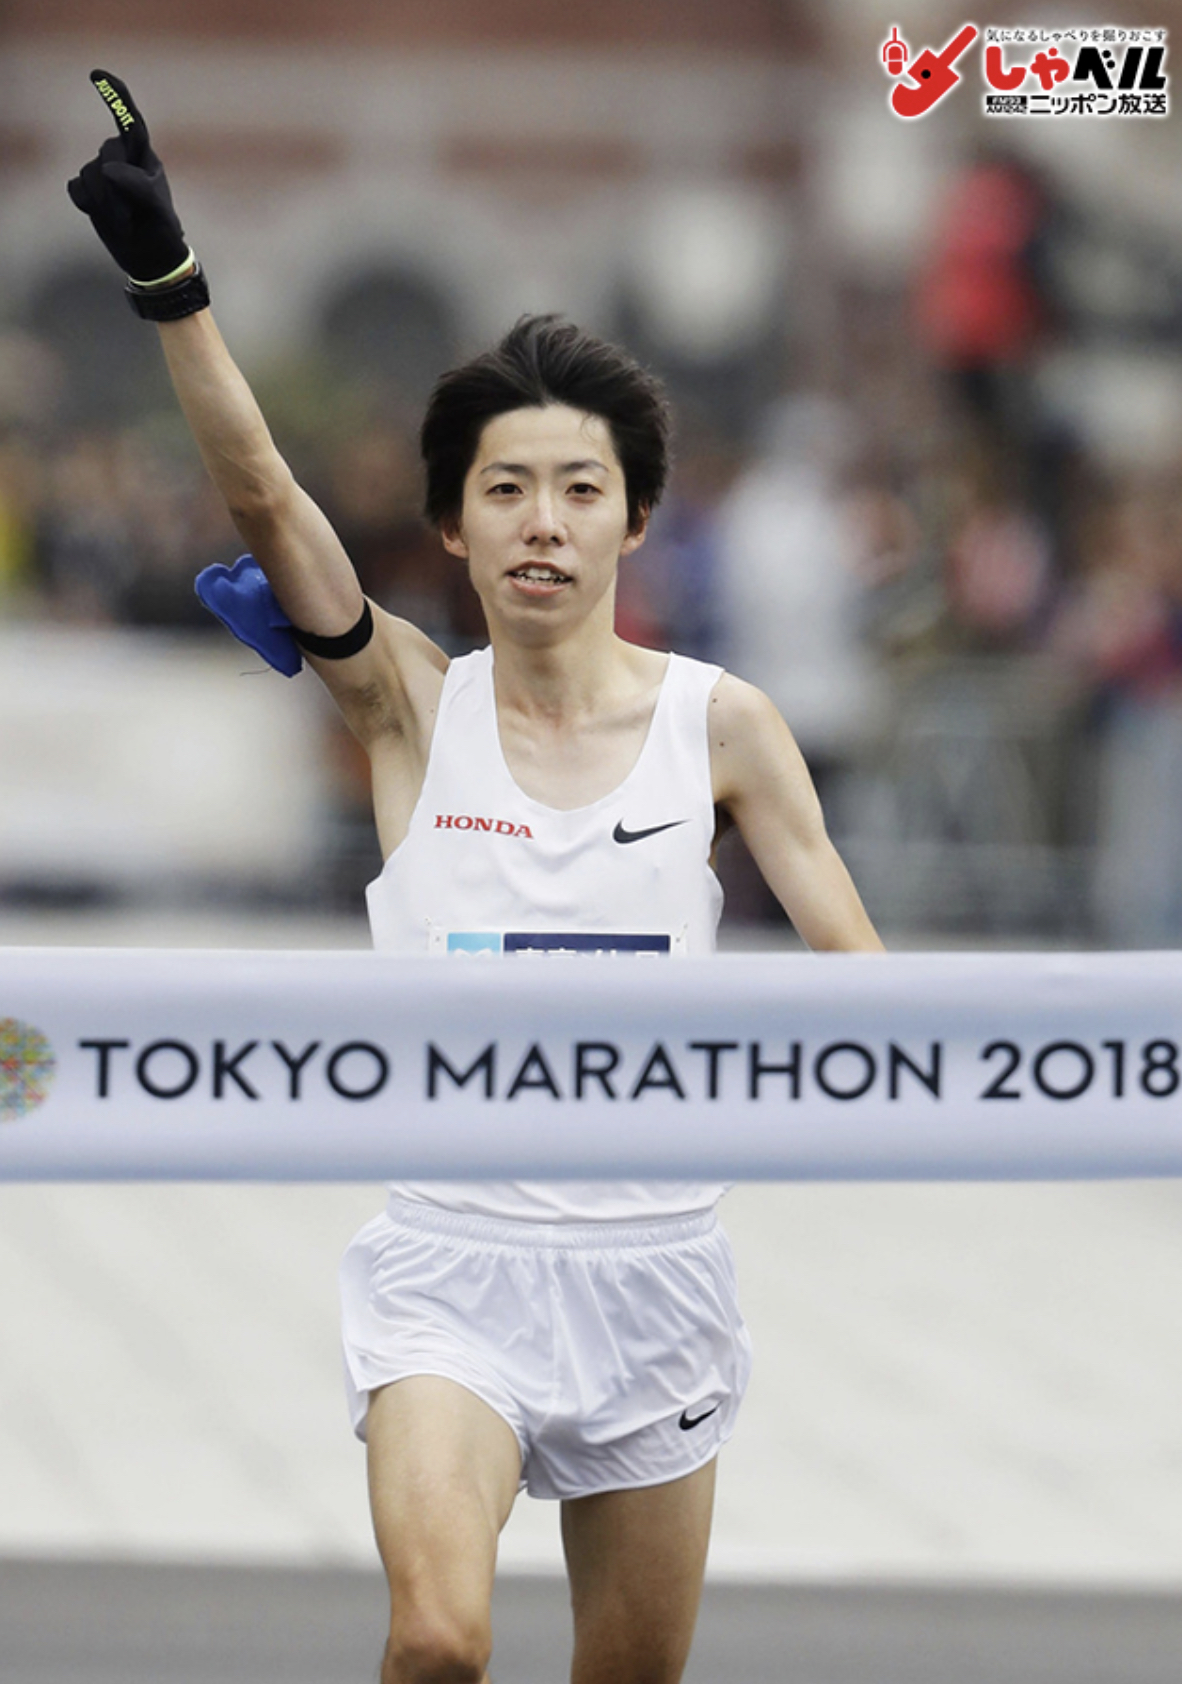 設楽悠太は東京マラソンで優勝できる 現在の怪我の状態 口 練習方法 シューズなど徹底調査しました ほのぼのニュース